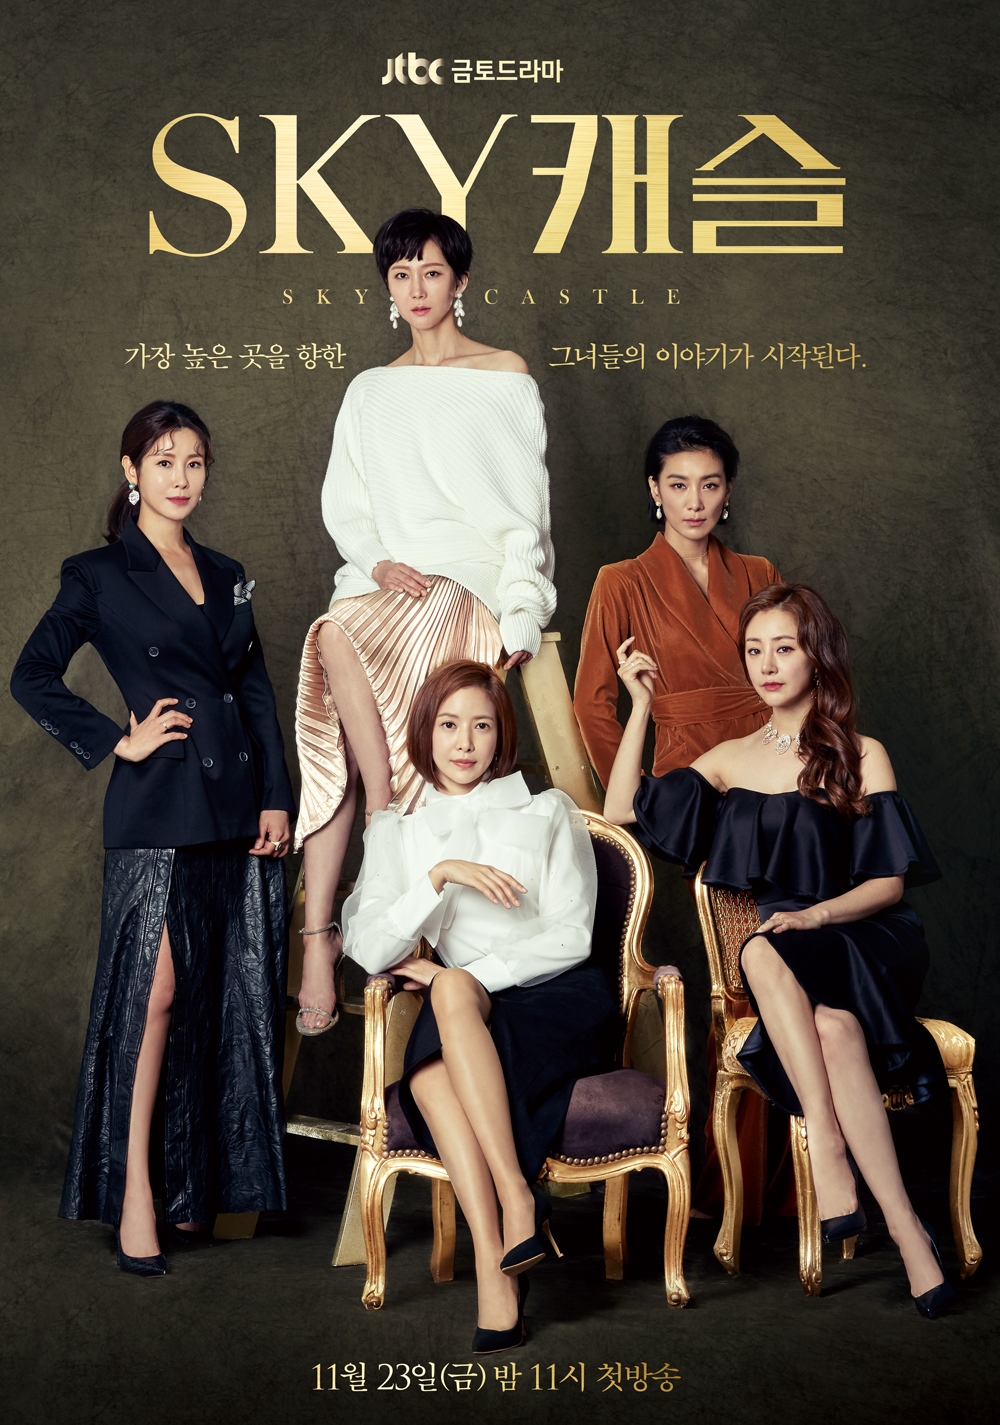 9 Rekomendasi drama Korea memuat pengasuhan, cocok ditonton ibu muda